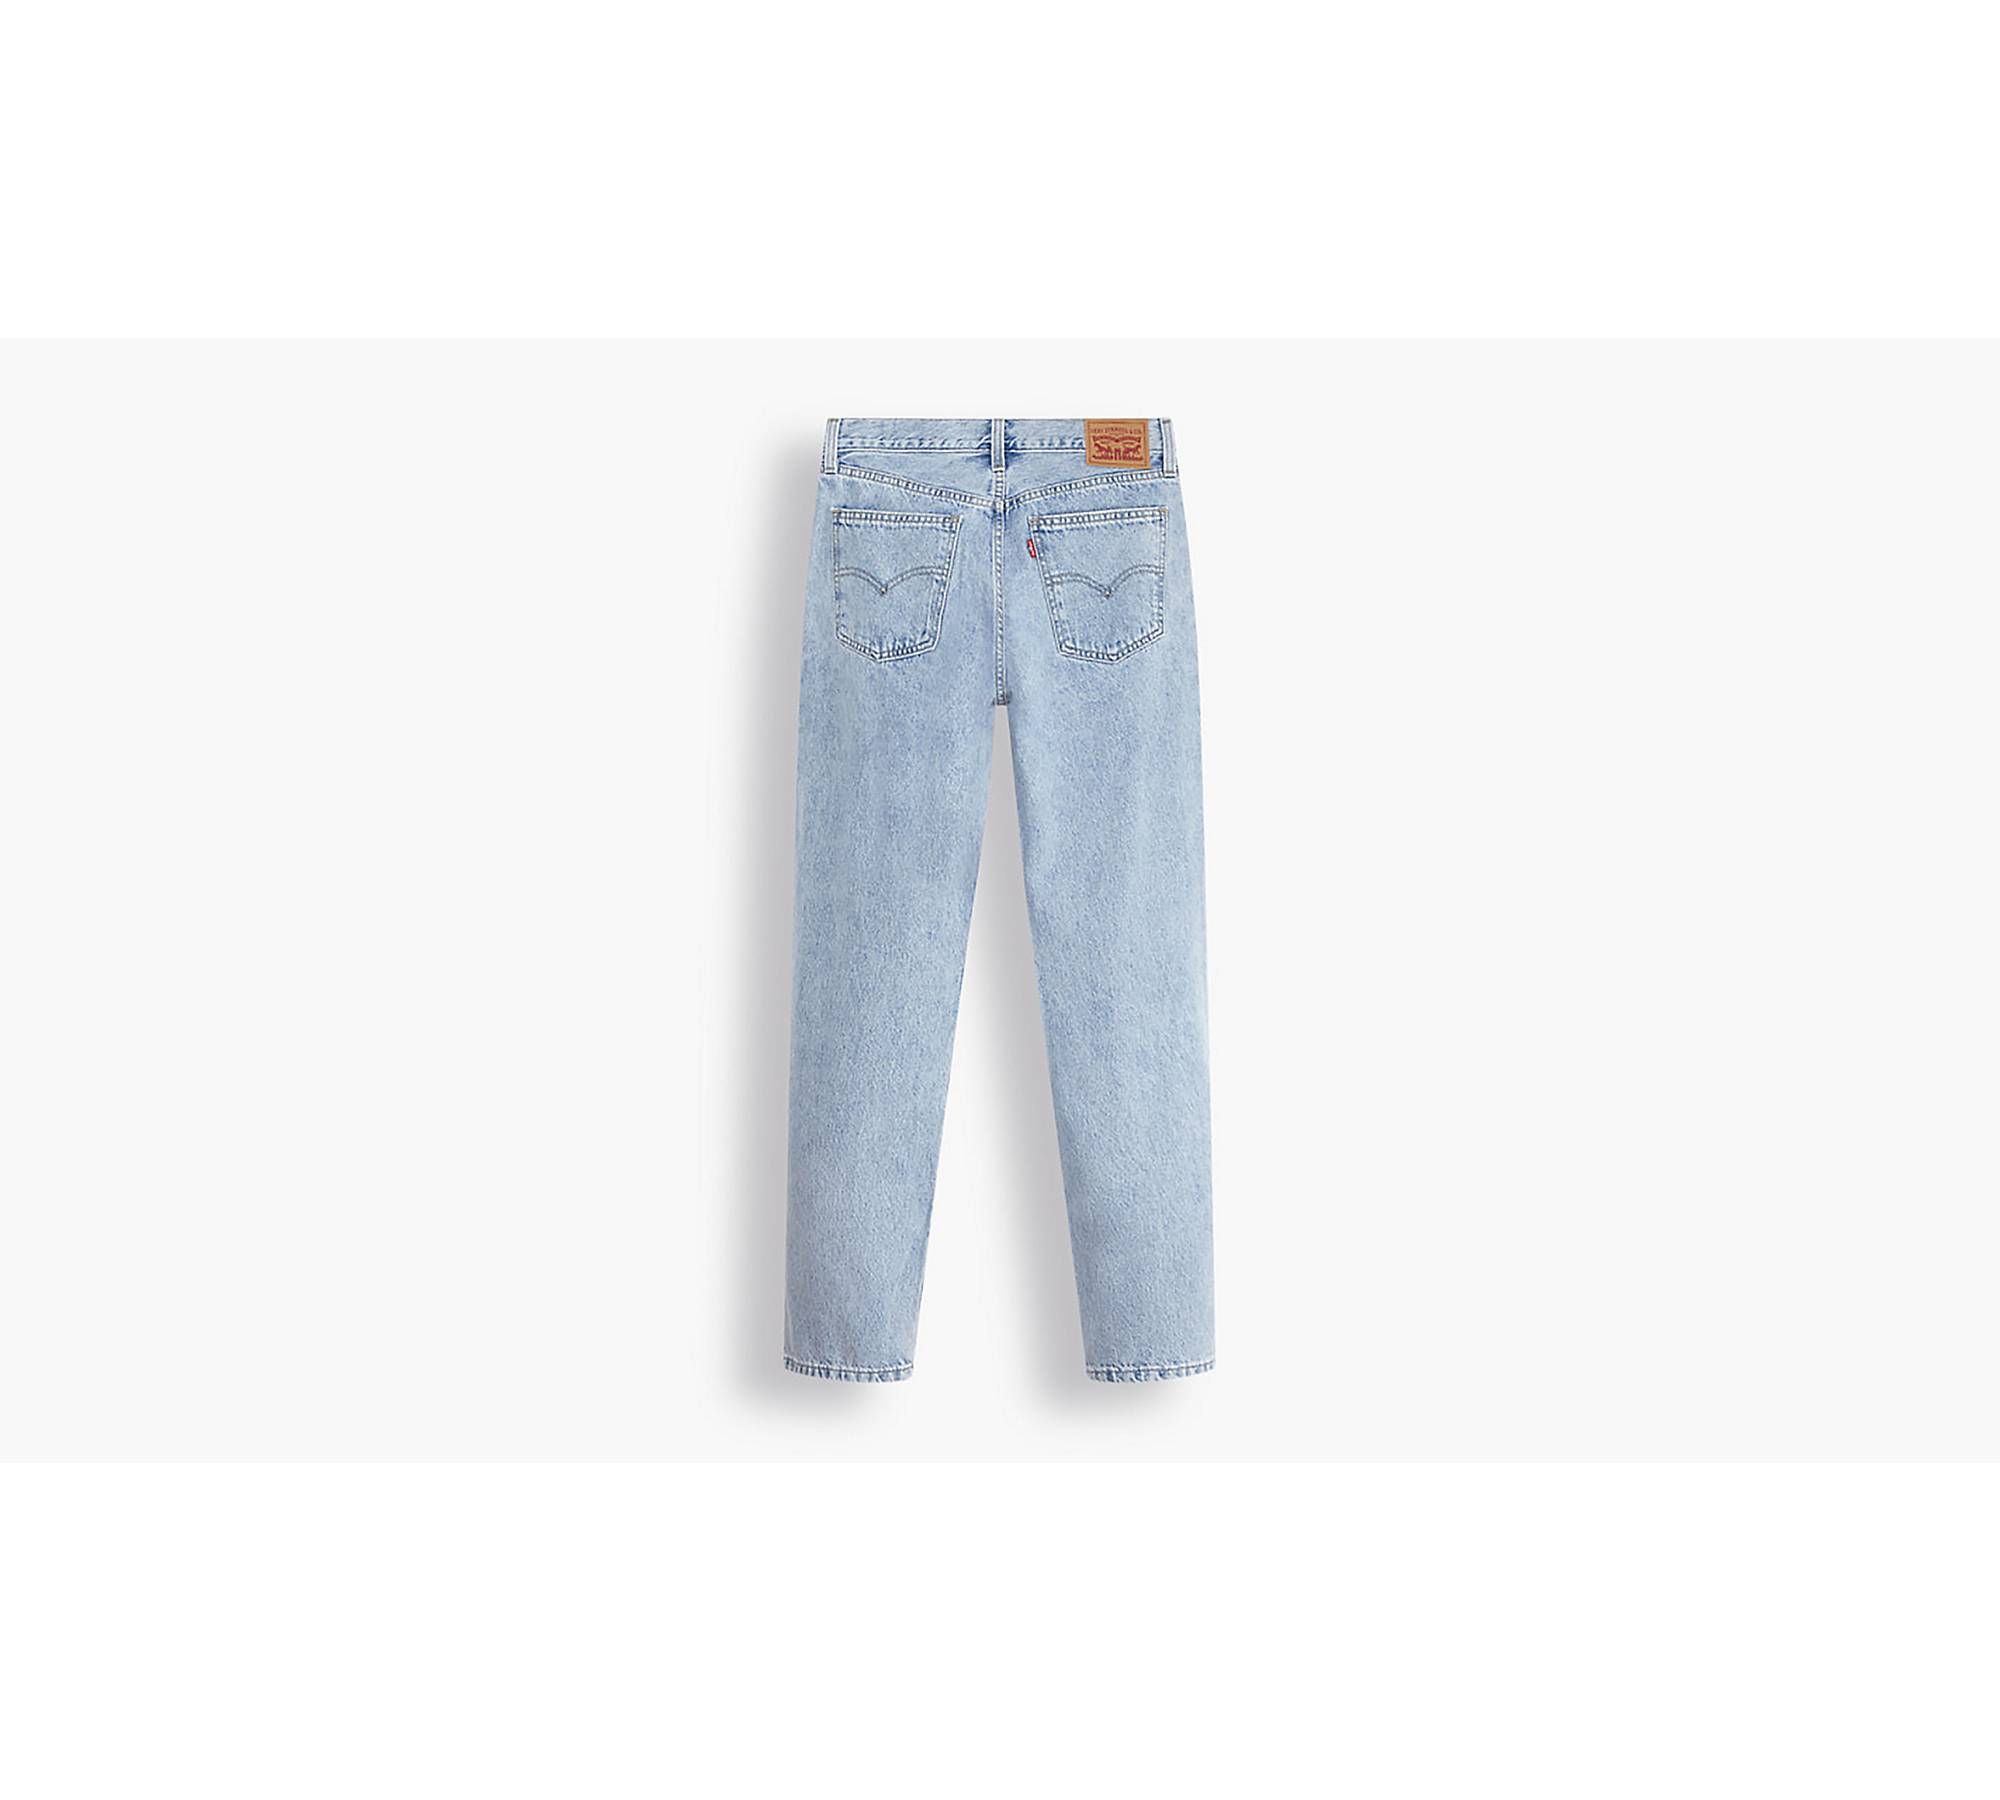 LEVI'S Womens Denizen Straight Capri Jeans US 10 Large W32 L20 Blue Cotton, Vintage & Second-Hand Clothing Online